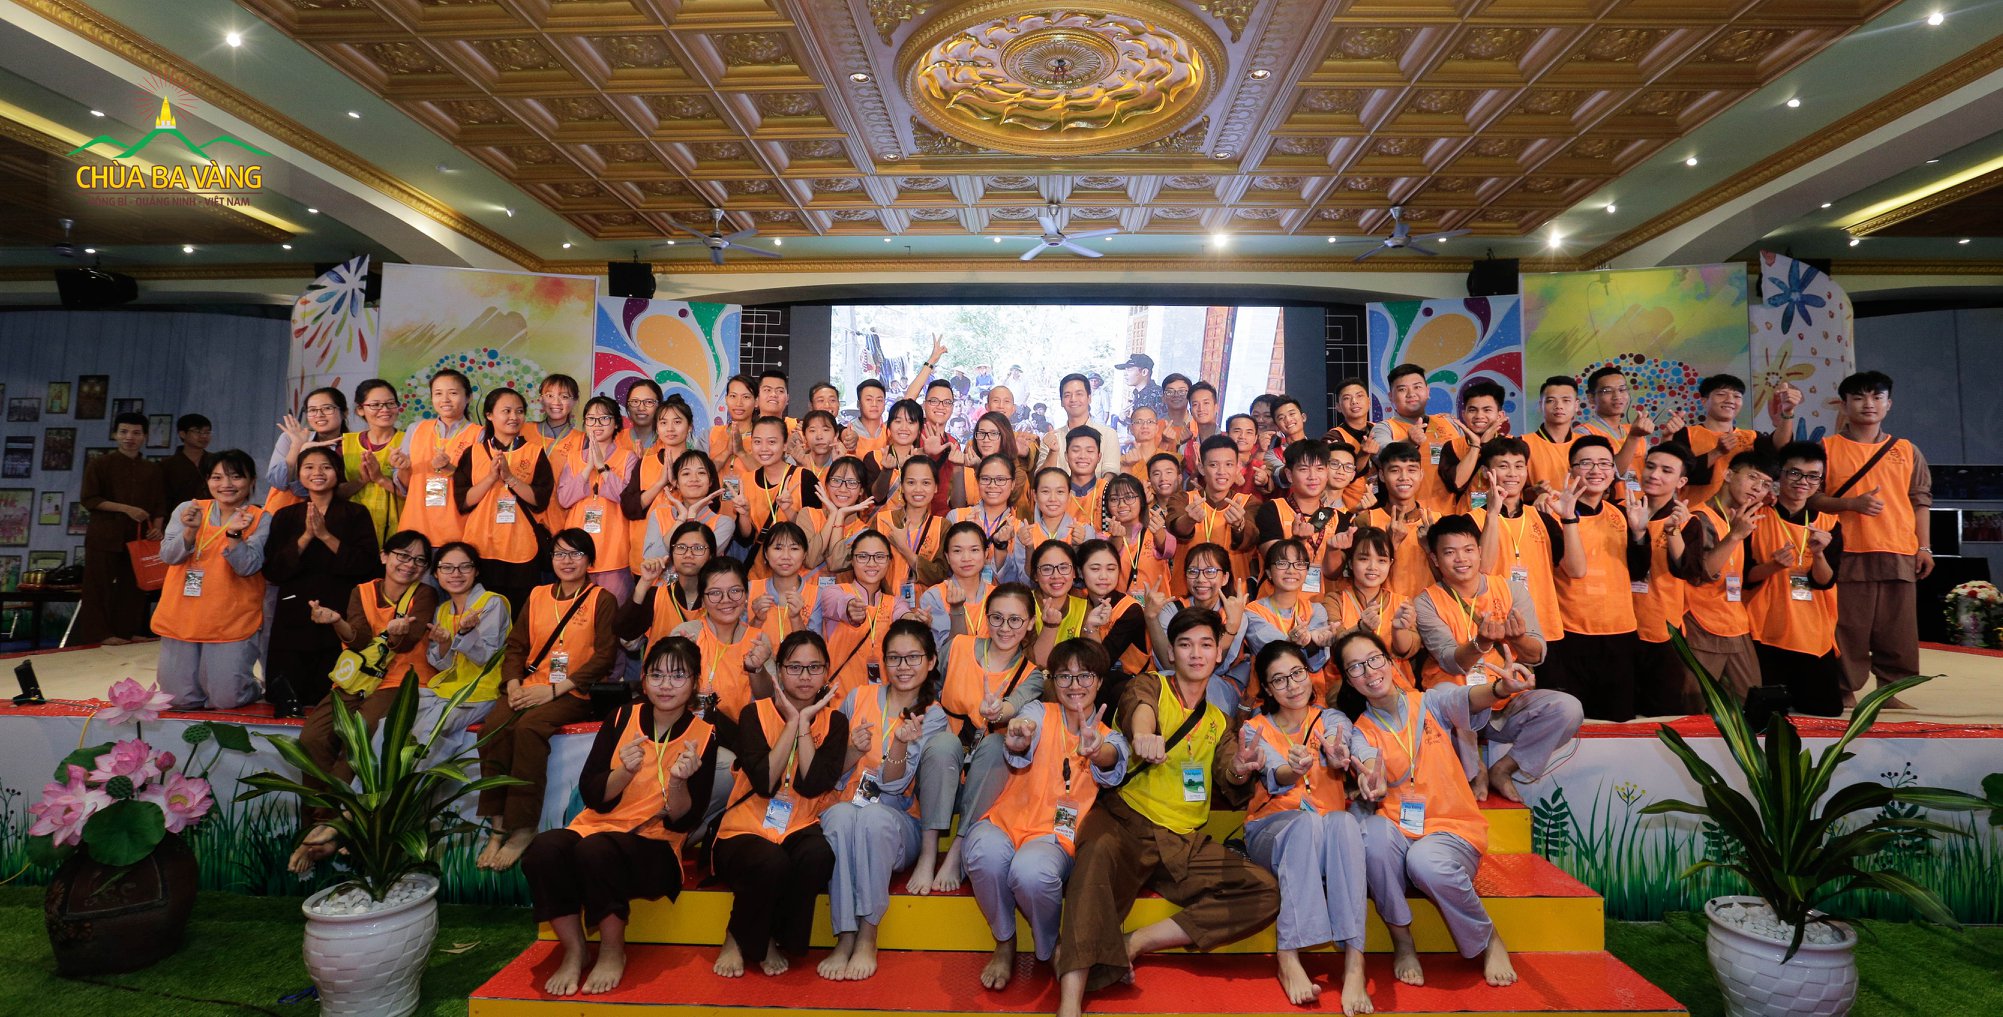 MC Phan Anh chụp ảnh lưu niệm cùng một số anh chị tình nguyện viên khóa tu mùa hè.